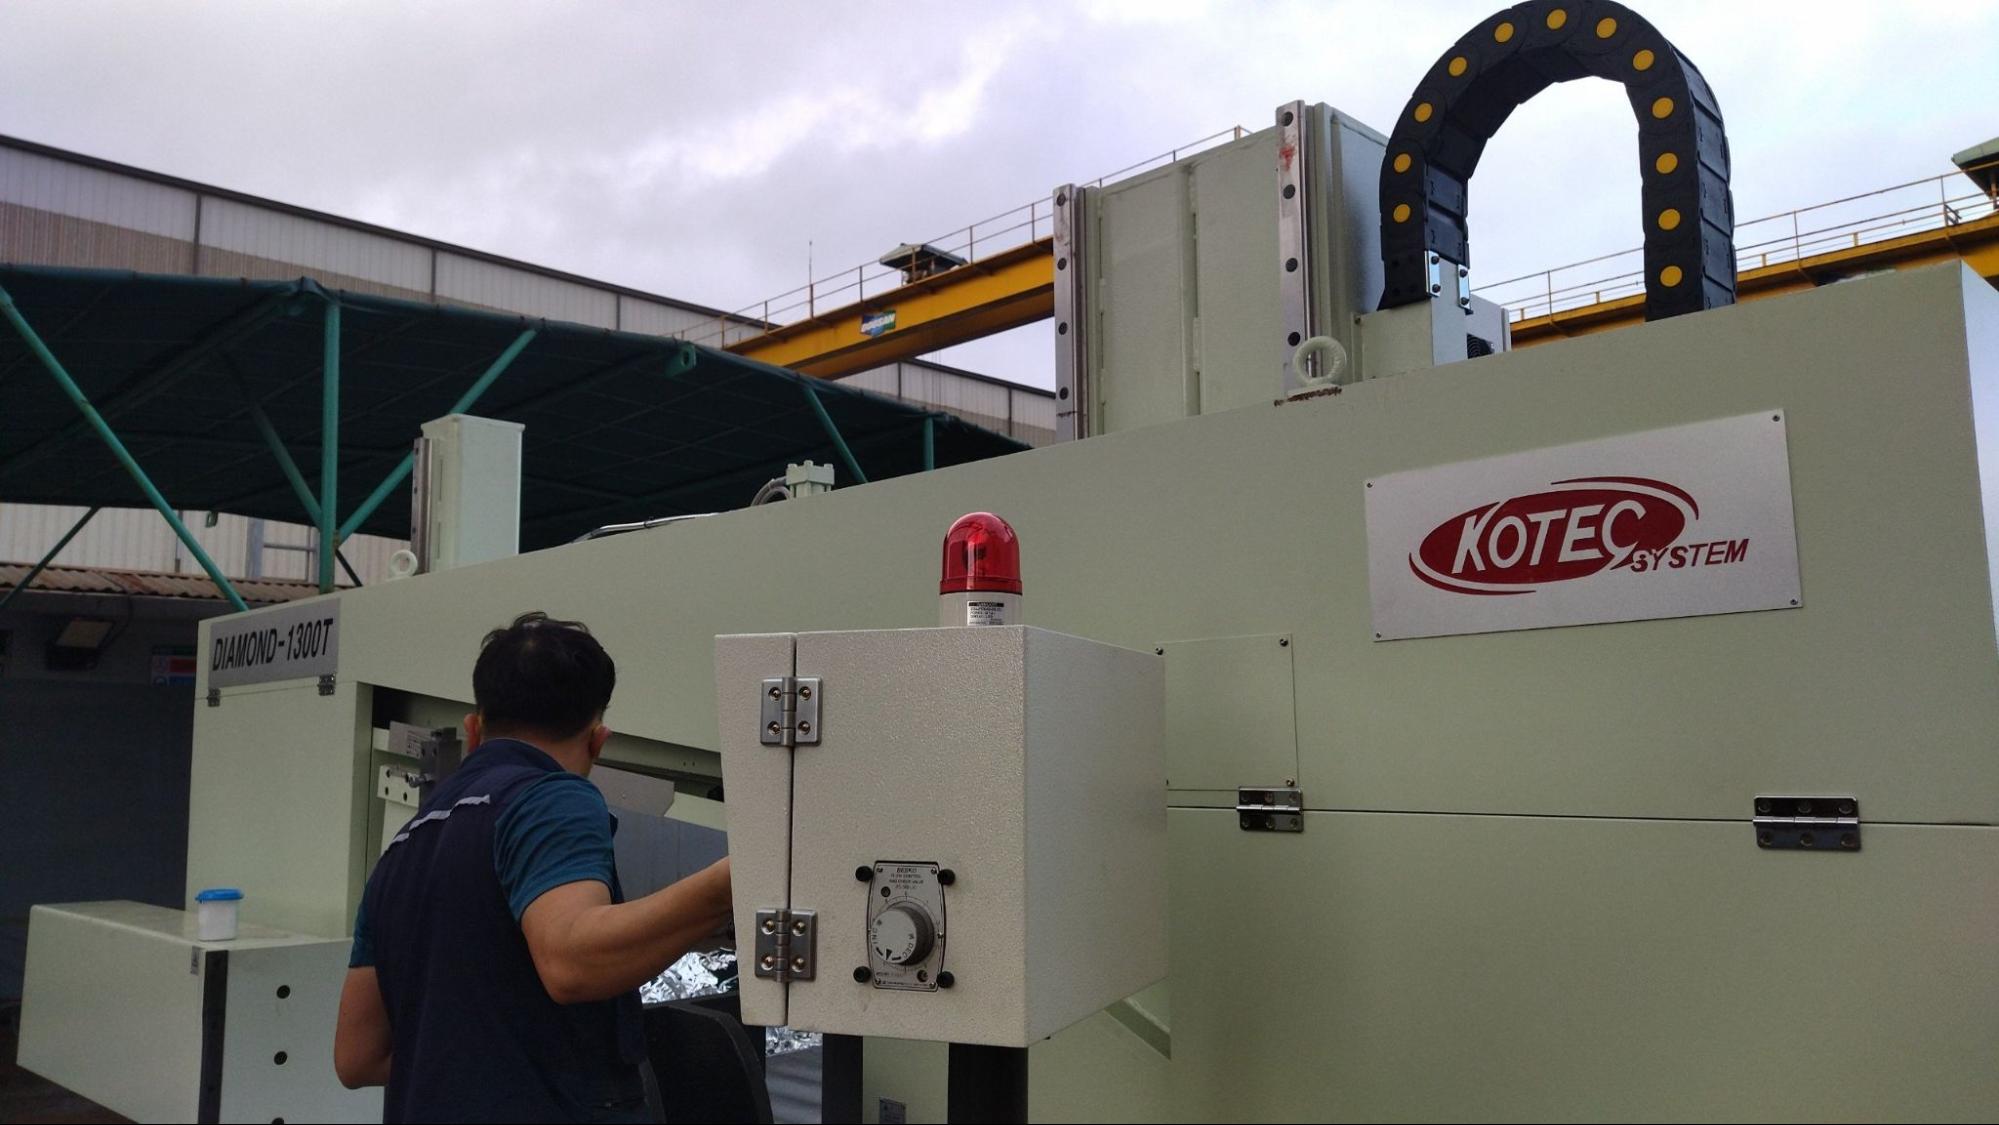 Sản phẩm máy cưa thép được chế tạo bởi Kotec System